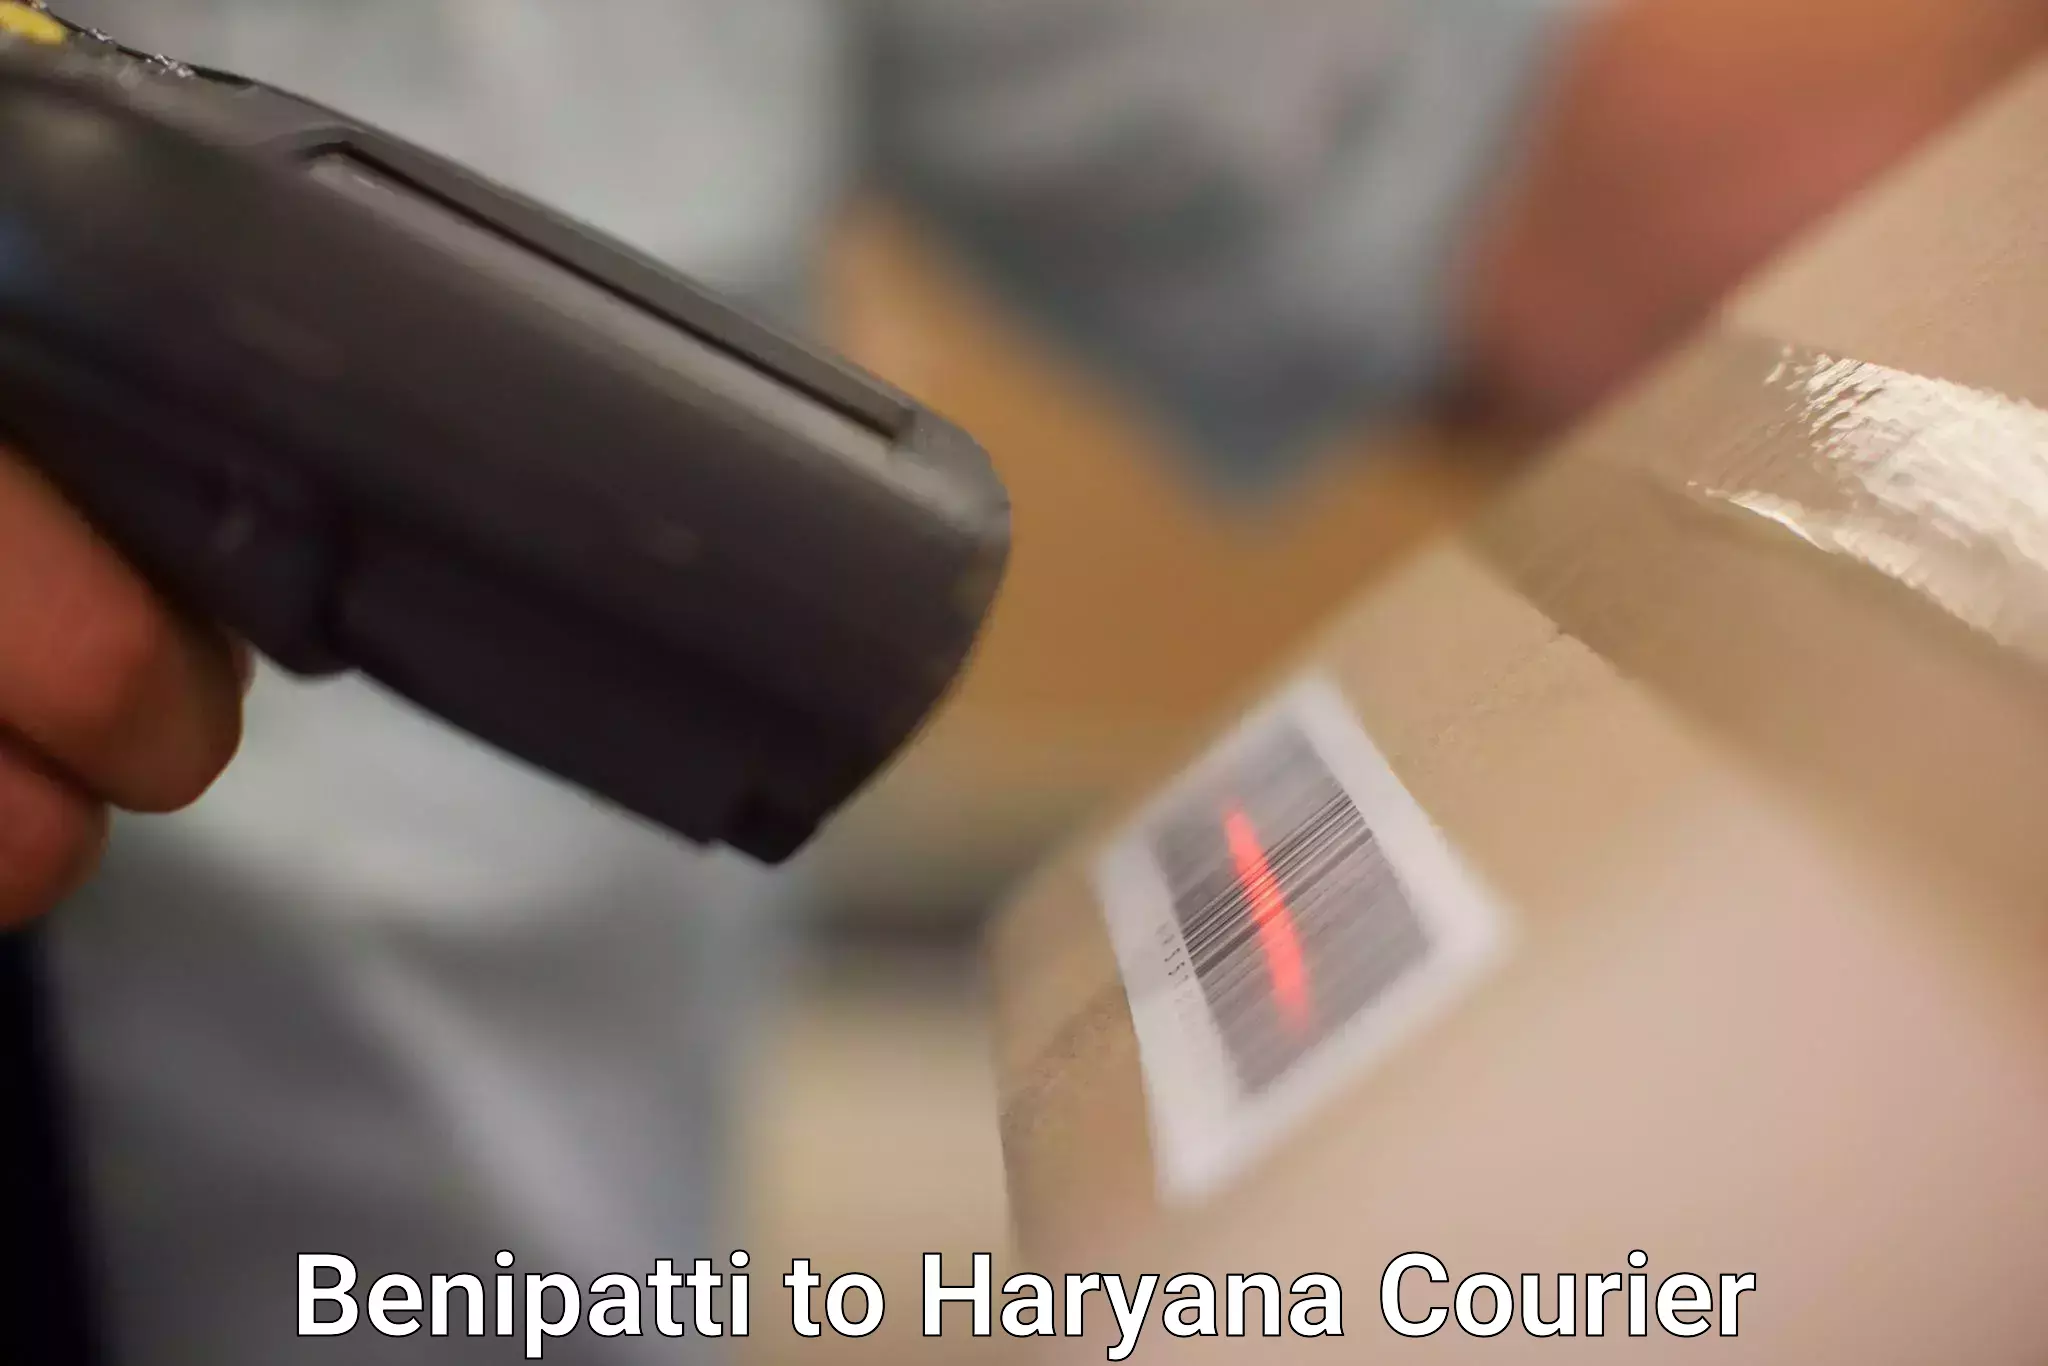 Seamless shipping experience Benipatti to Panchkula